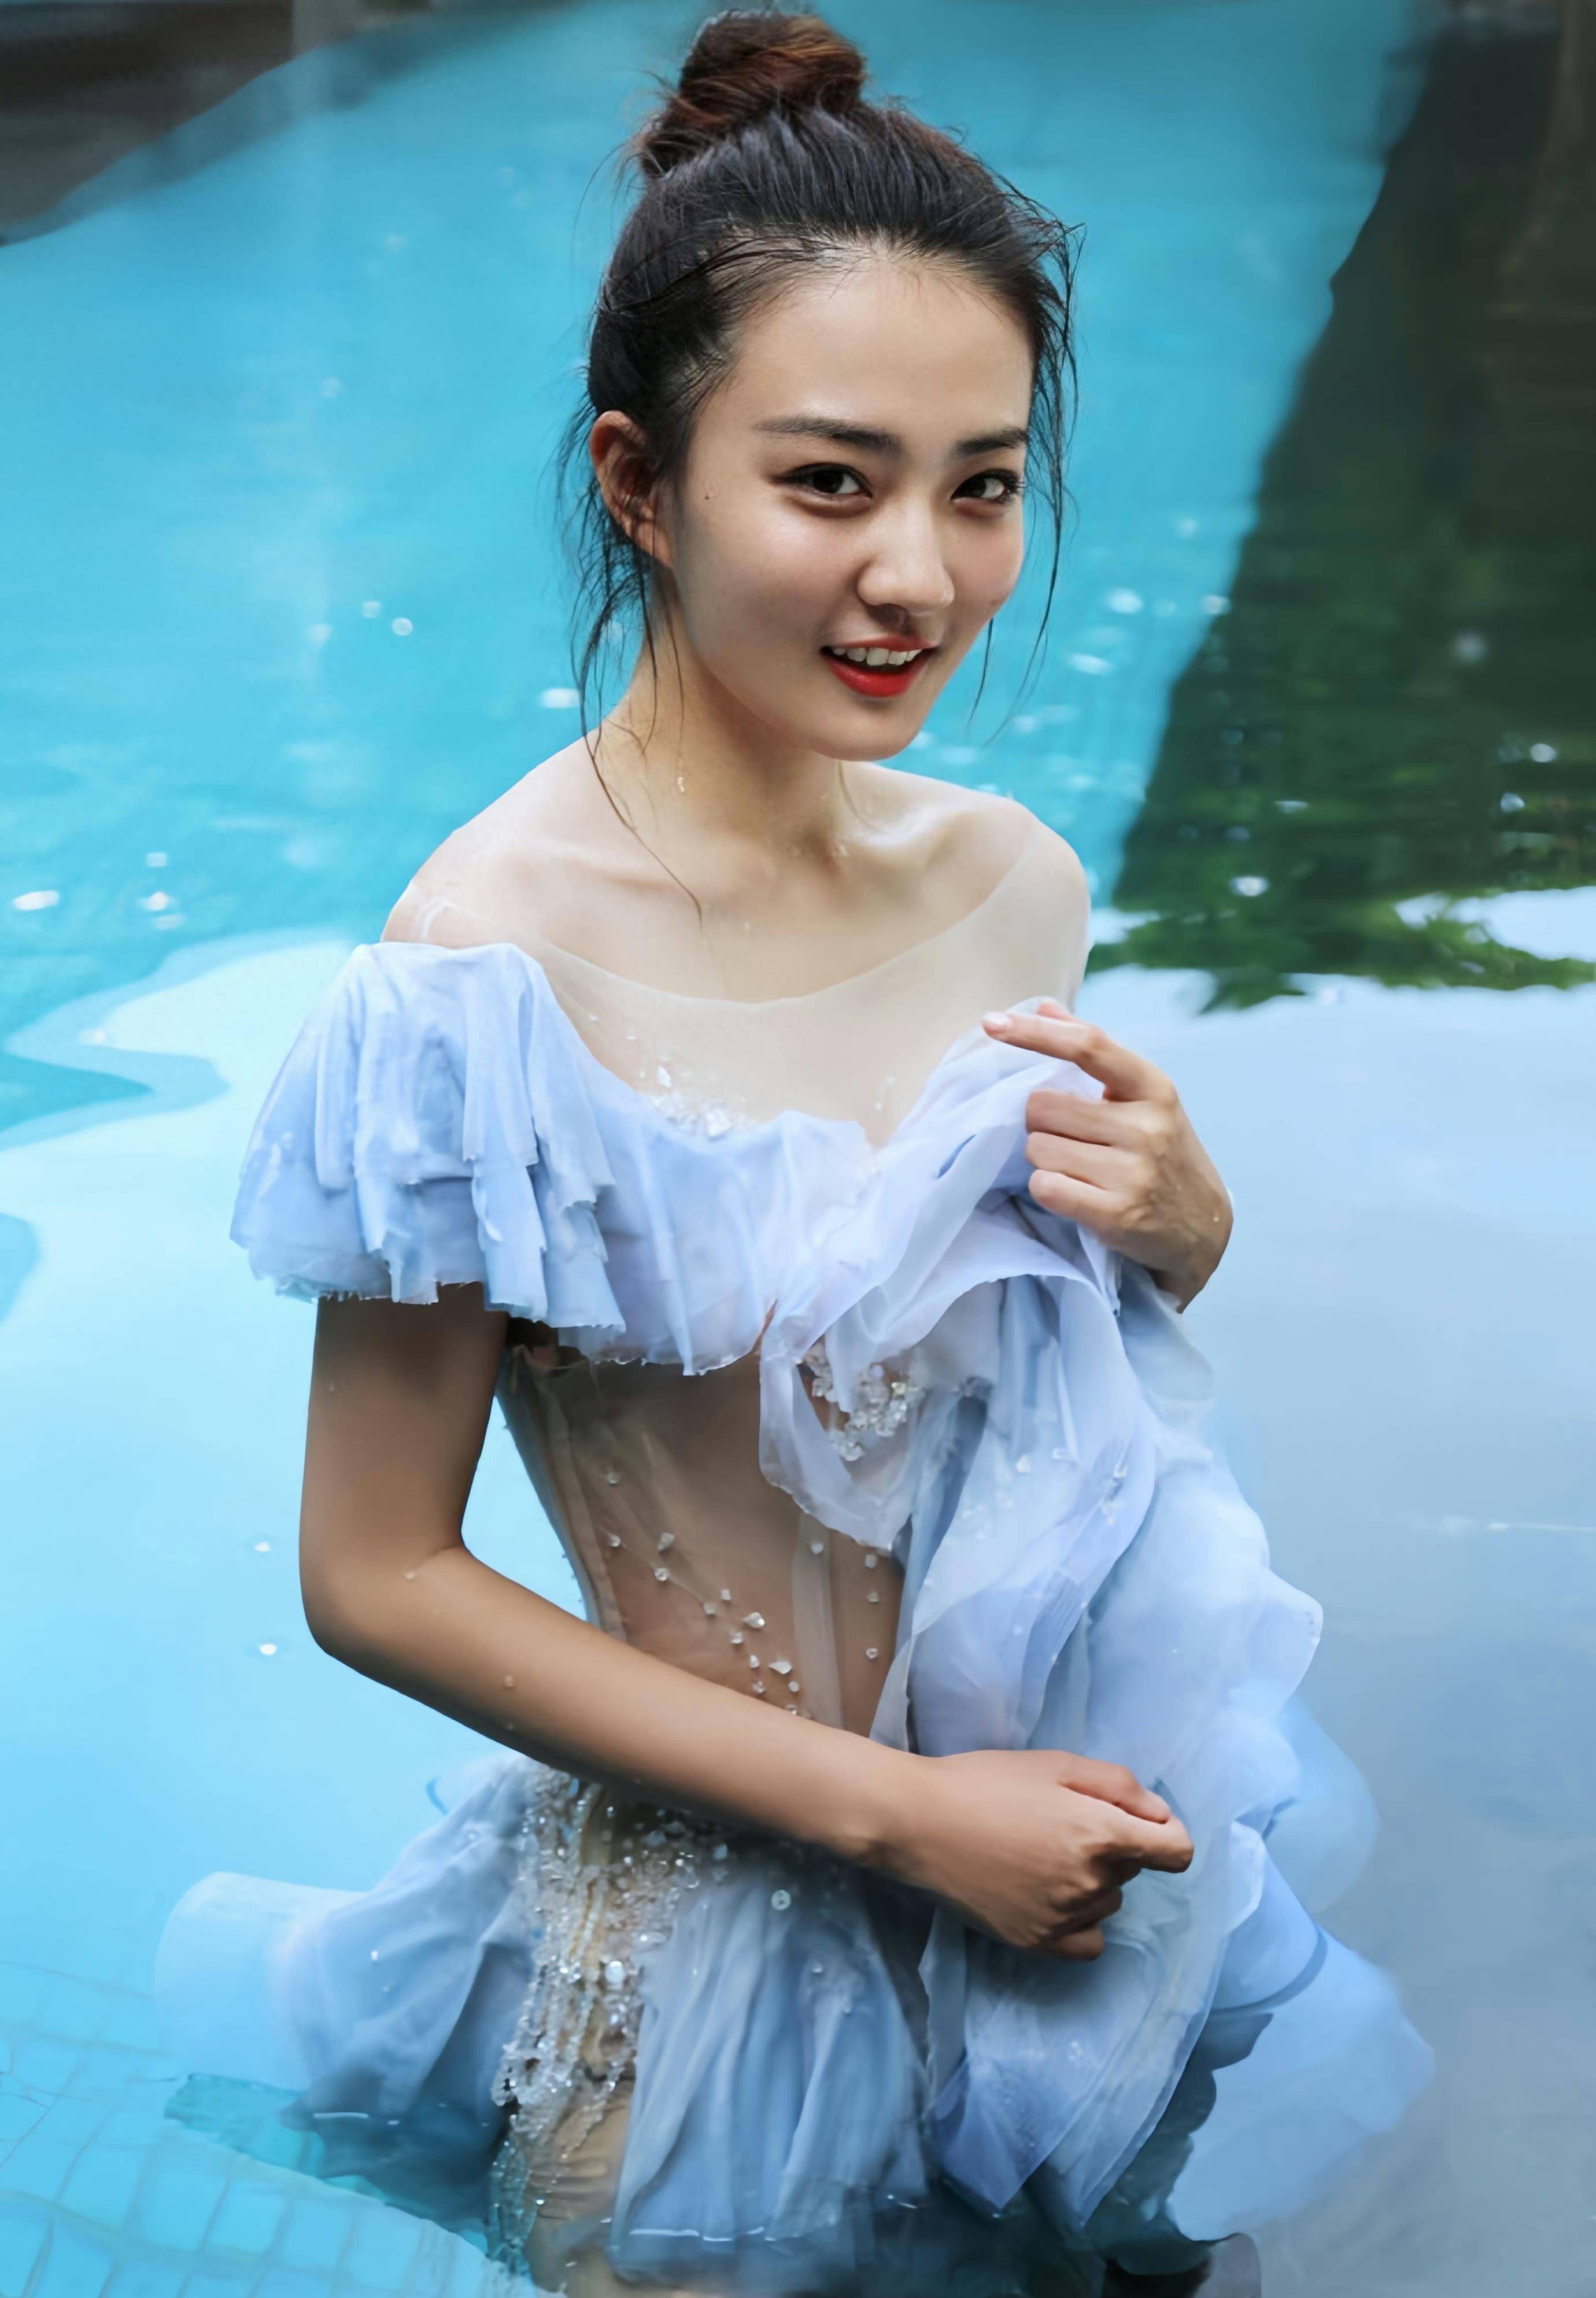 徐璐在海滩拍摄大片,身穿单层纱裙,甜美性感,颜值清纯,身材不凡!